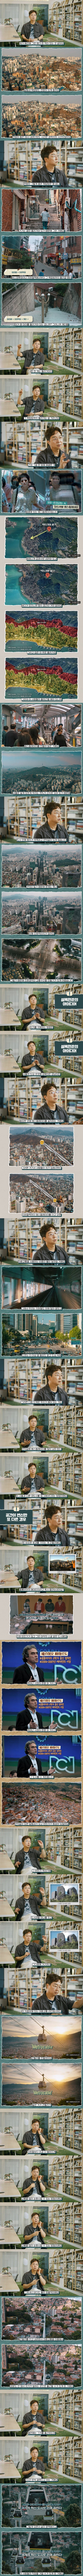 서울에 에스컬레이터를 깔면 어떨까.jpg